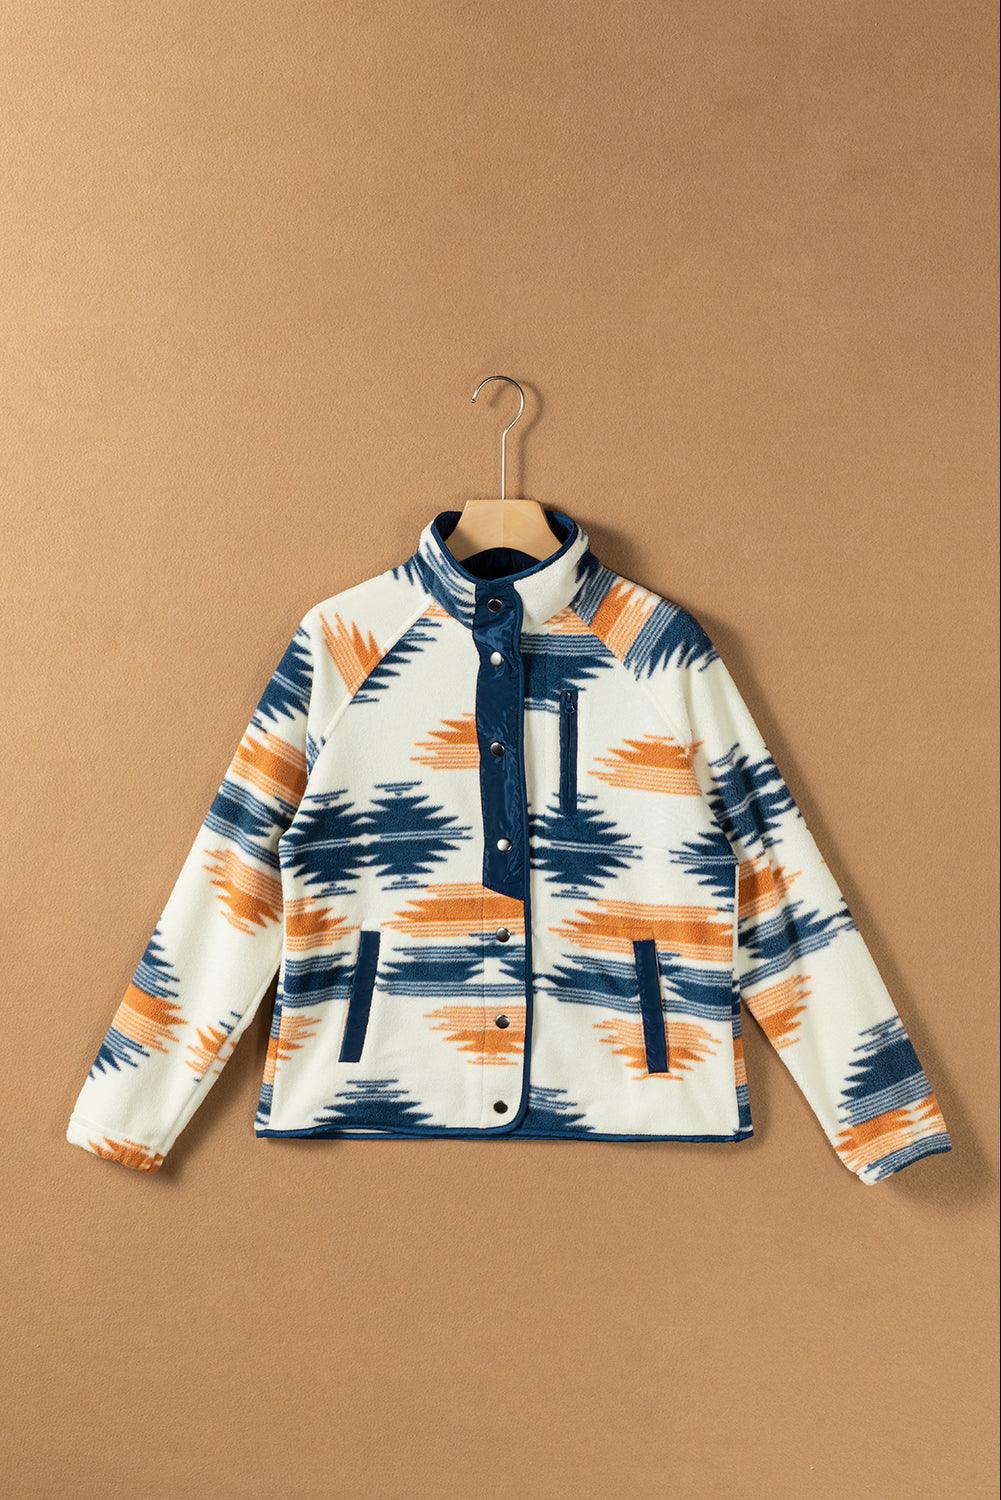 Multicolour Aztec Fleece Patchwork Snap Button Jacket - L & M Kee, LLC